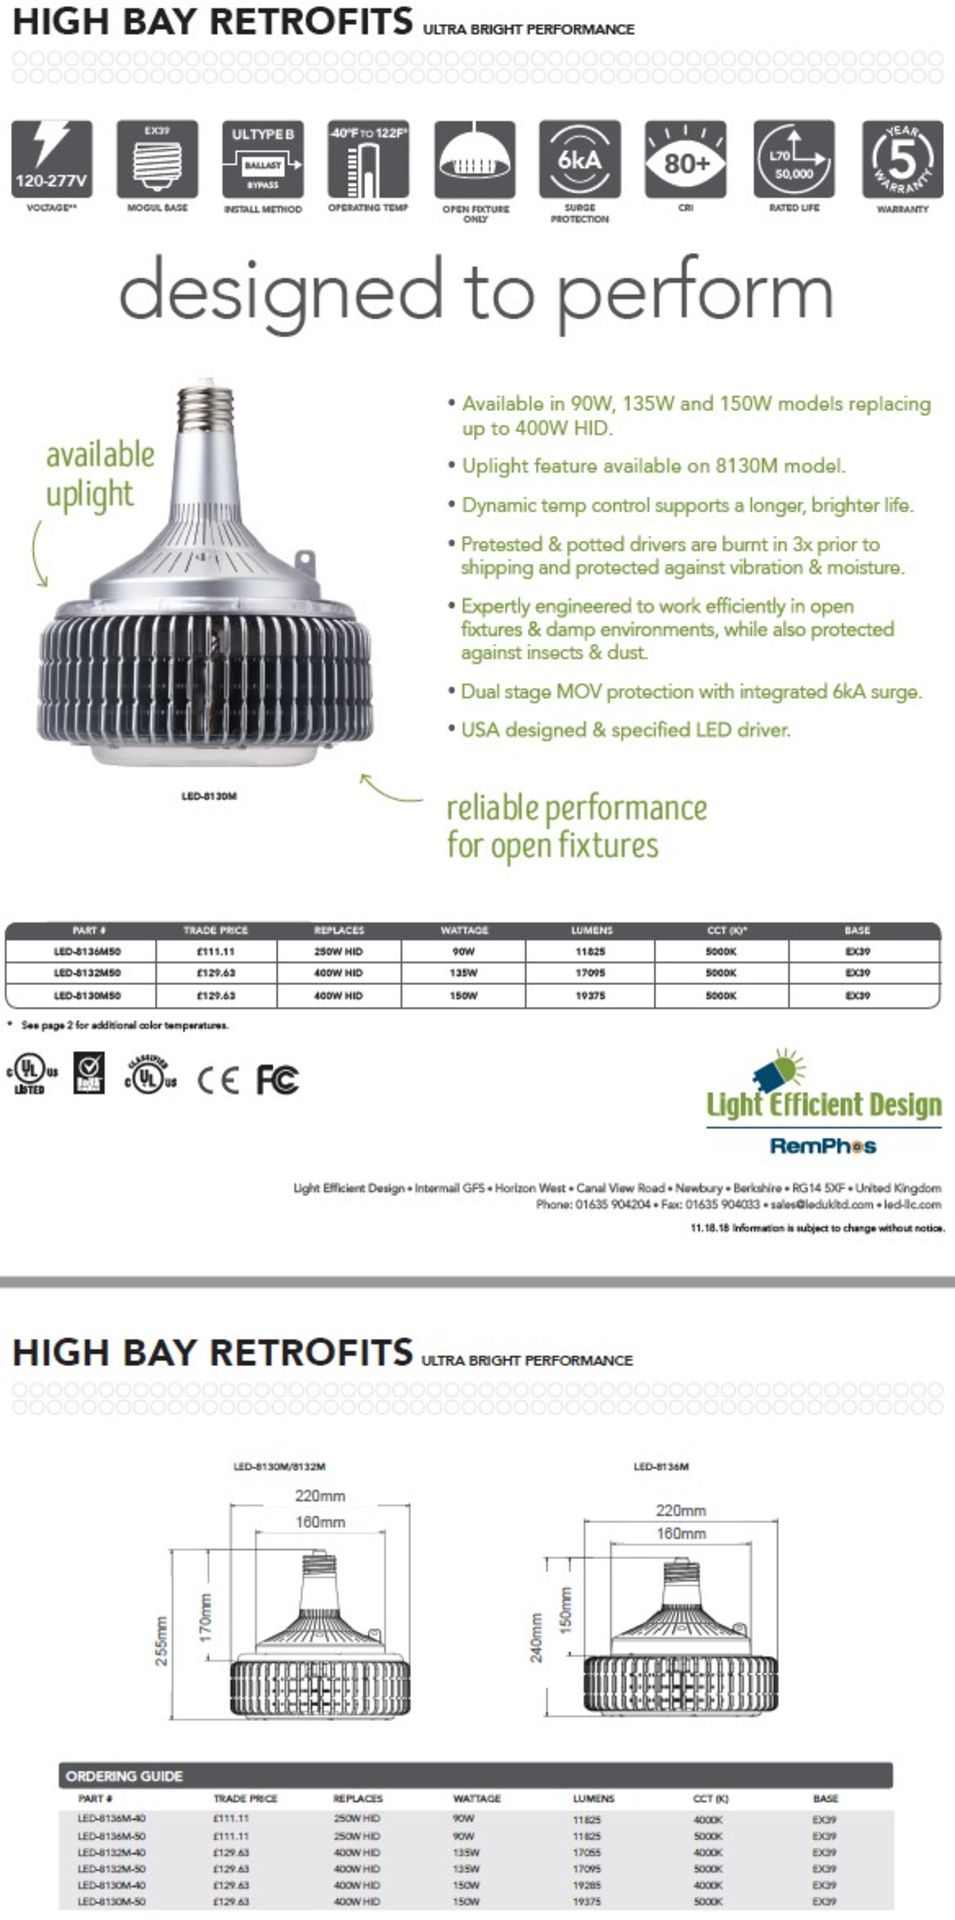 16 x Light Efficient Design LED-8136-CW-E40 90W LED HID Retrofit High Bay Open Fixture lamps (4000k - Image 3 of 3